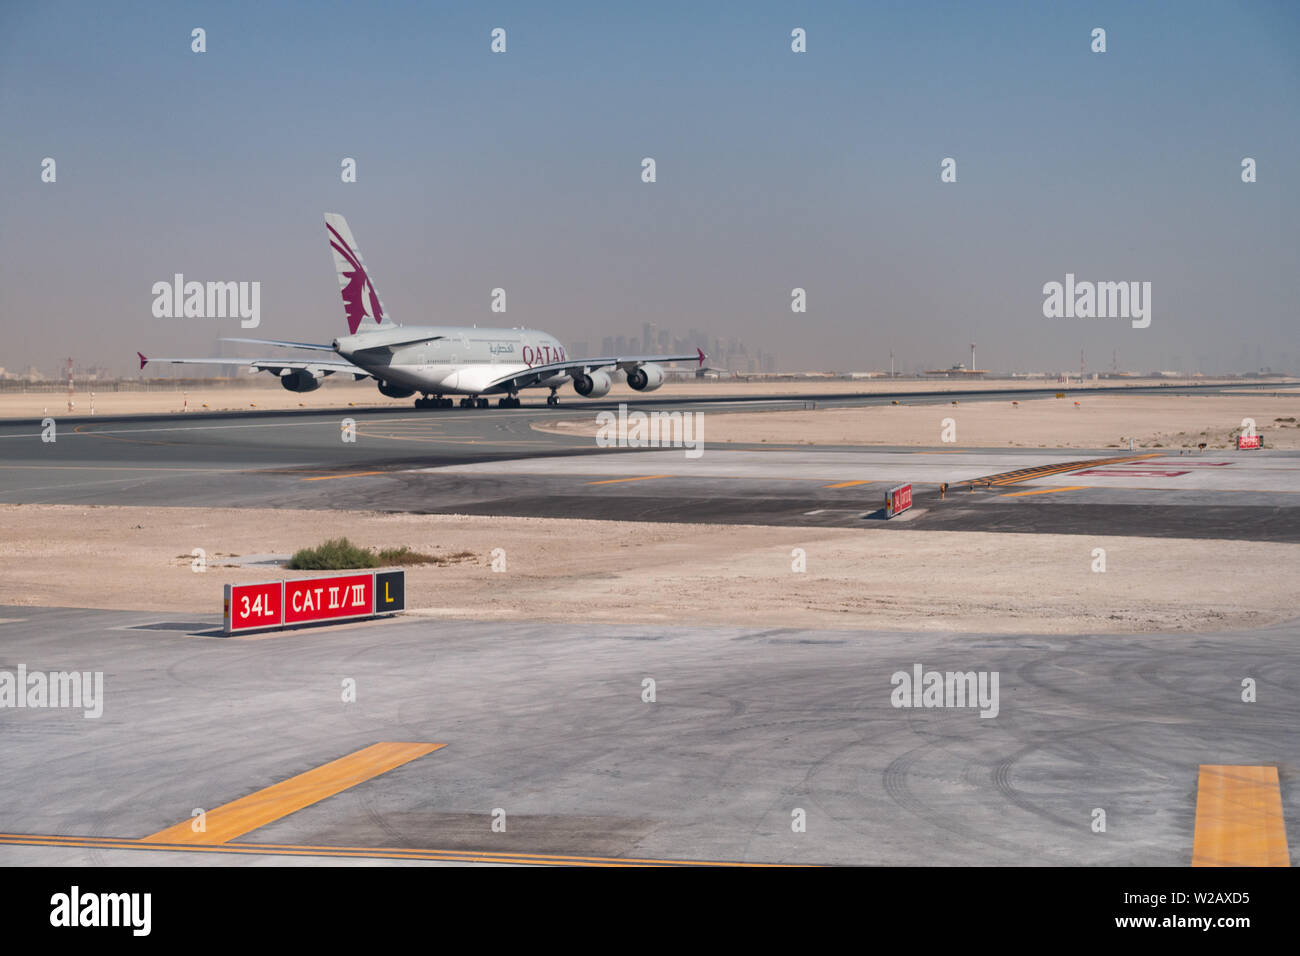 Un Qatar Airways Airbus A380-800 jet superjumbo accélère pour le décollage à l'Aéroport International Hamad, Doha, Qatar Banque D'Images